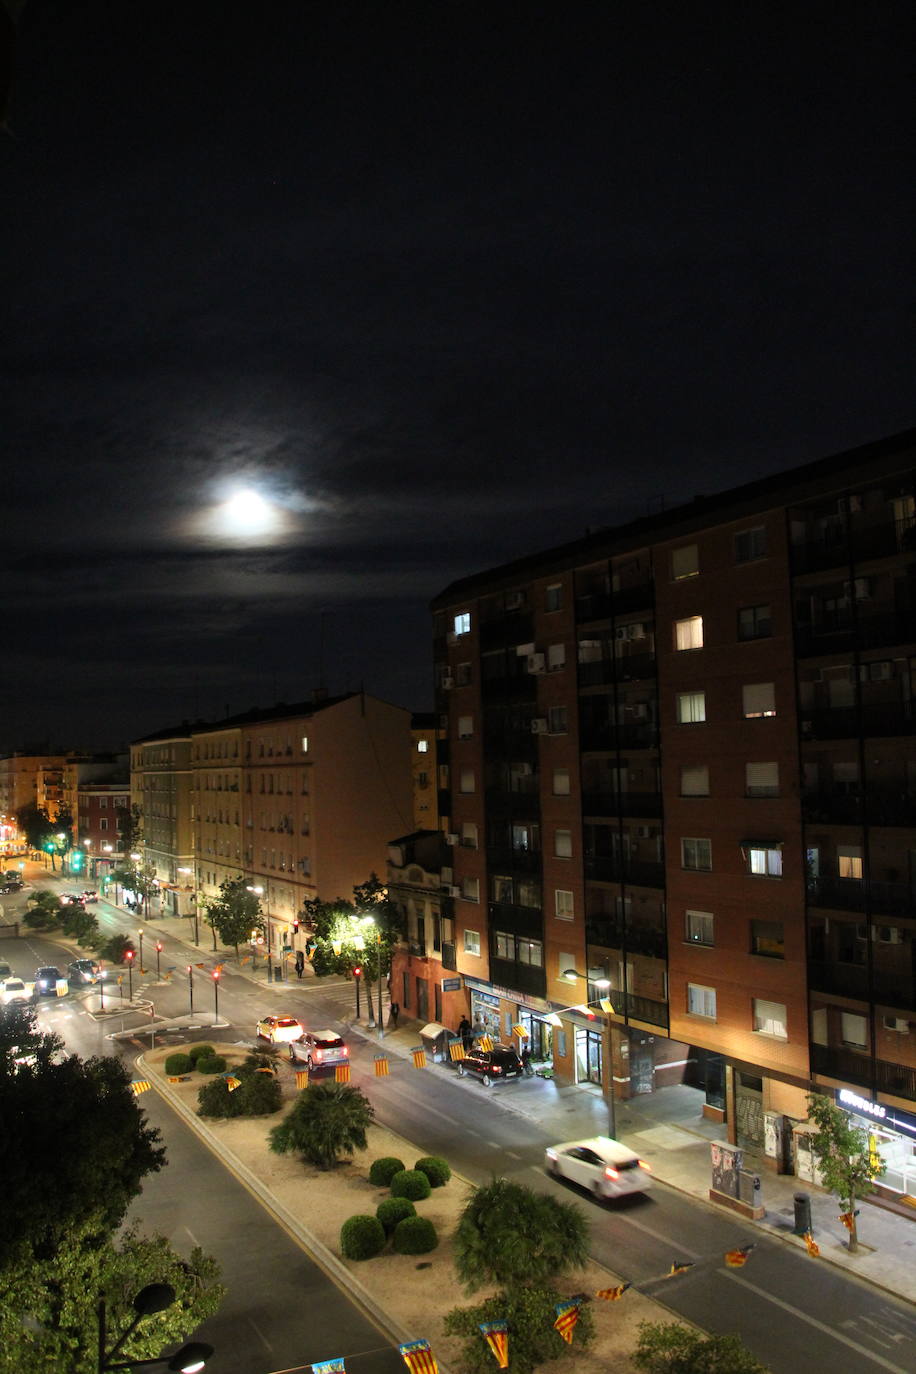 La segunda luna del perigeo del año, conocida popularmente como superluna, ha iluminado esta noche el cielo con una apariencia ligeramente mayor -hasta un 14 por ciento- de lo habitual y un brillo un 30 por ciento más intenso. En Valencia, pese a las nubes altas, también se ha podido contemplar